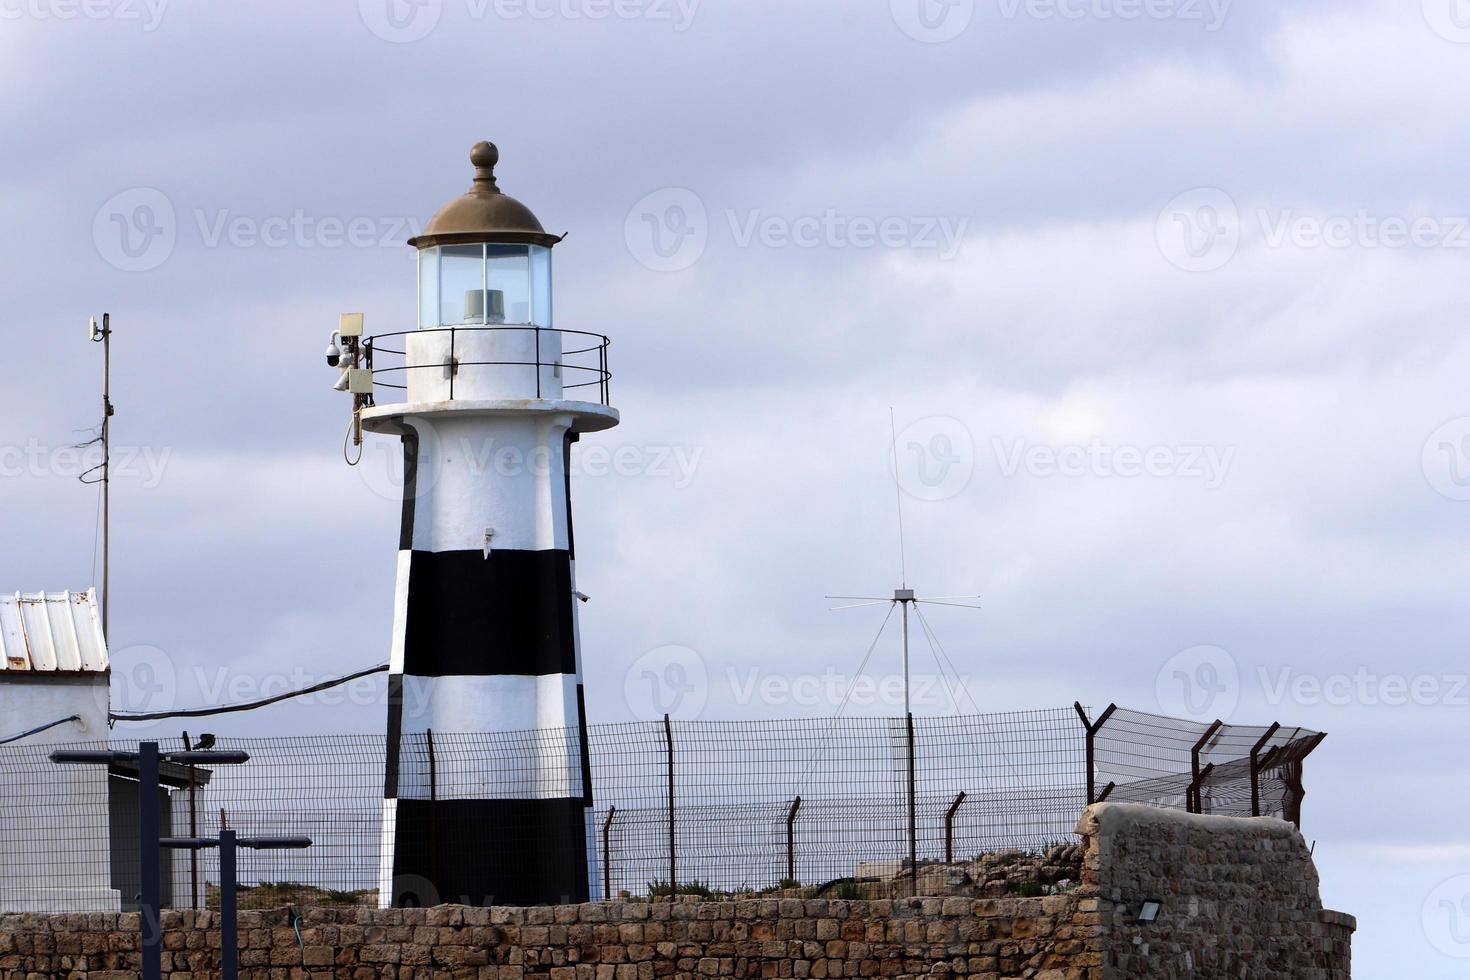 une phare est une navigation point de repère cette est utilisé à identifier côtes et Localiser navires. photo